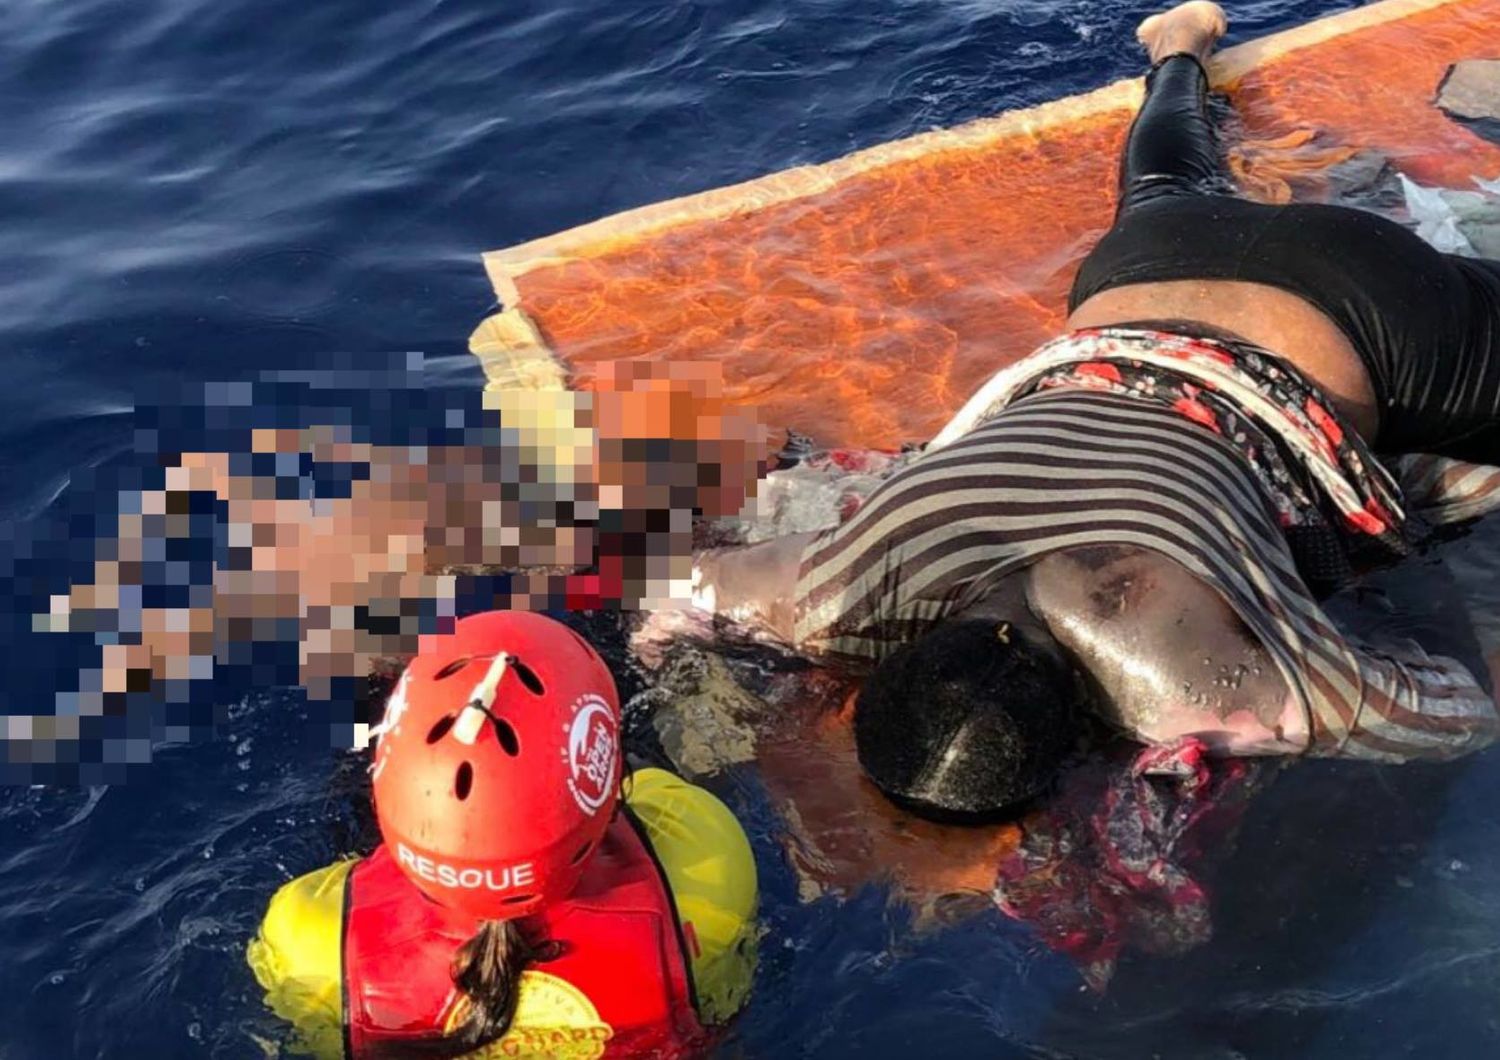 &nbsp;La donna annegata nel naufragio del gommone al largo della Libia&nbsp;